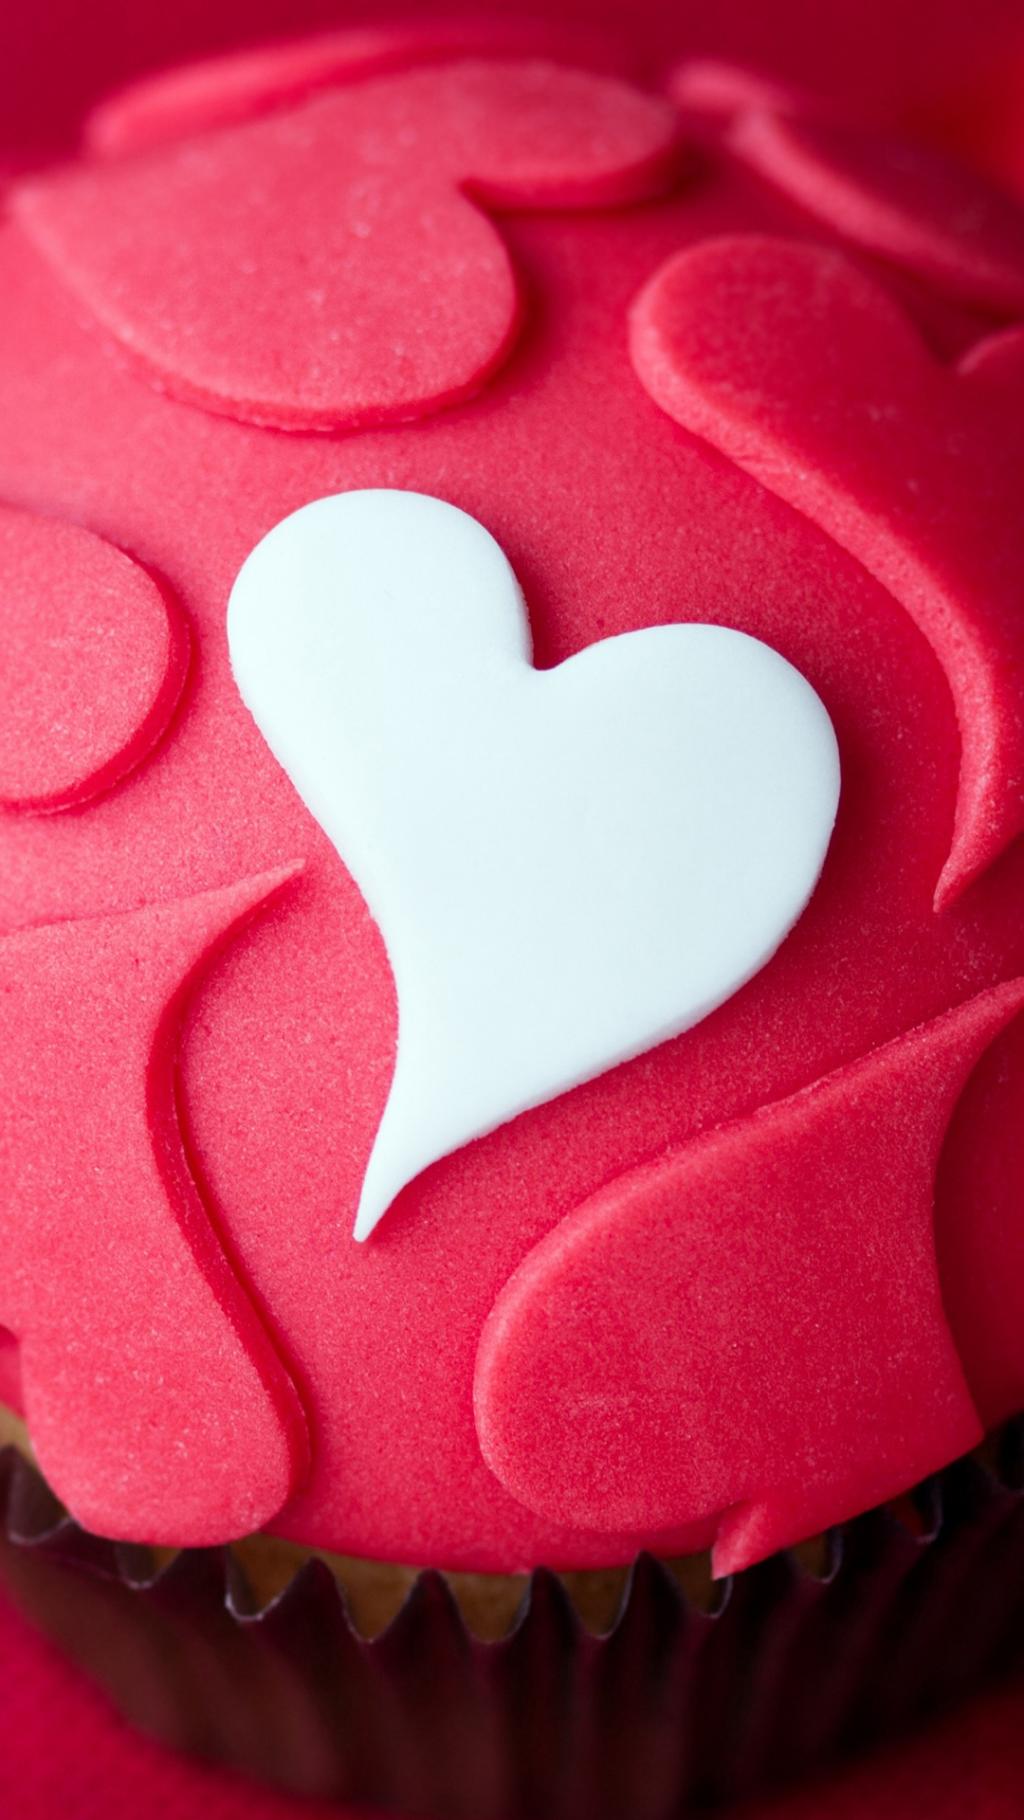 心形爱情甜品蛋糕iPhone 6 Plus高清壁纸